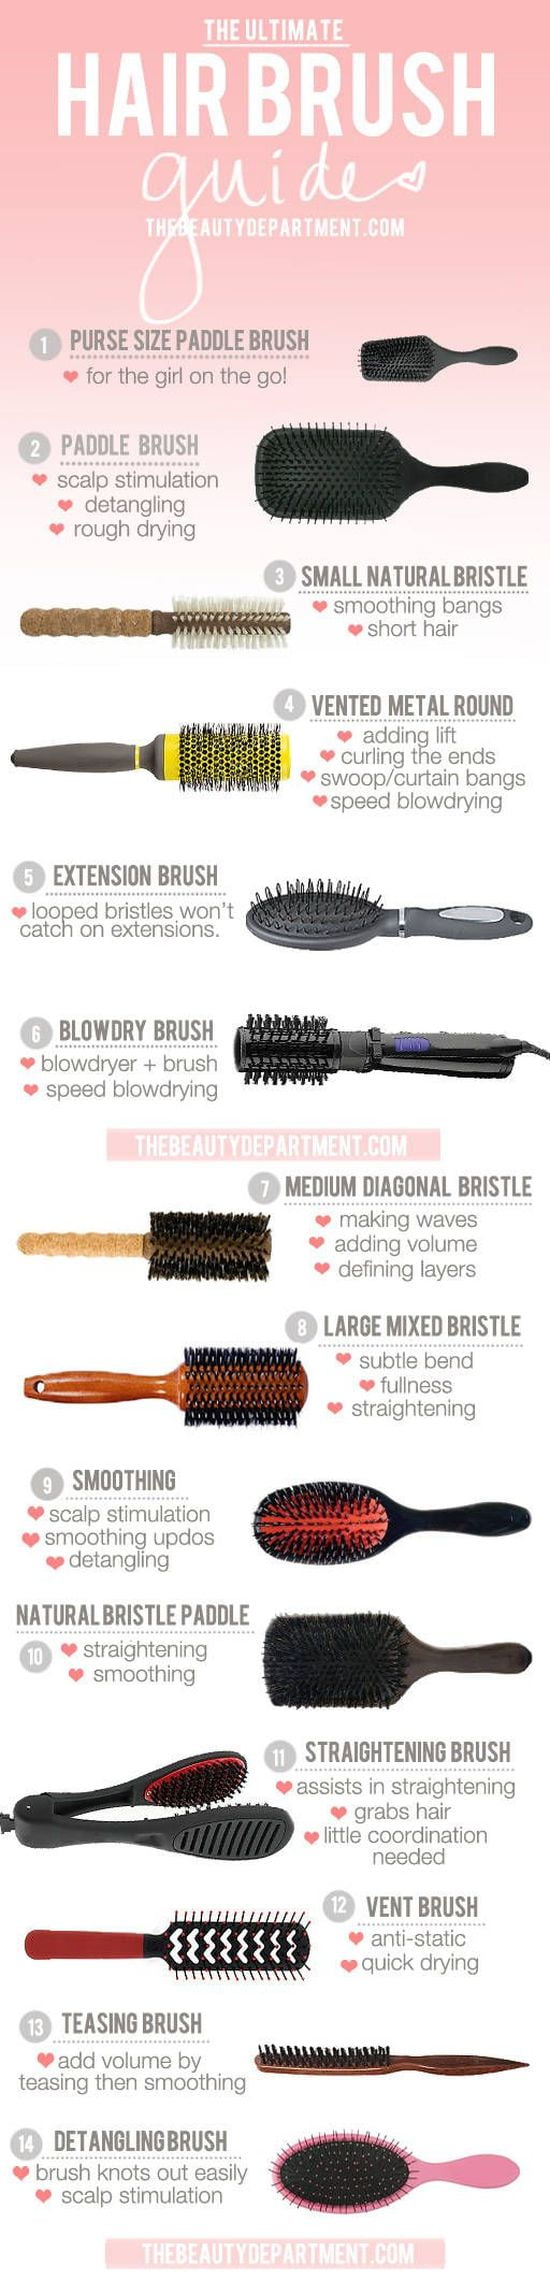 Hair brush types